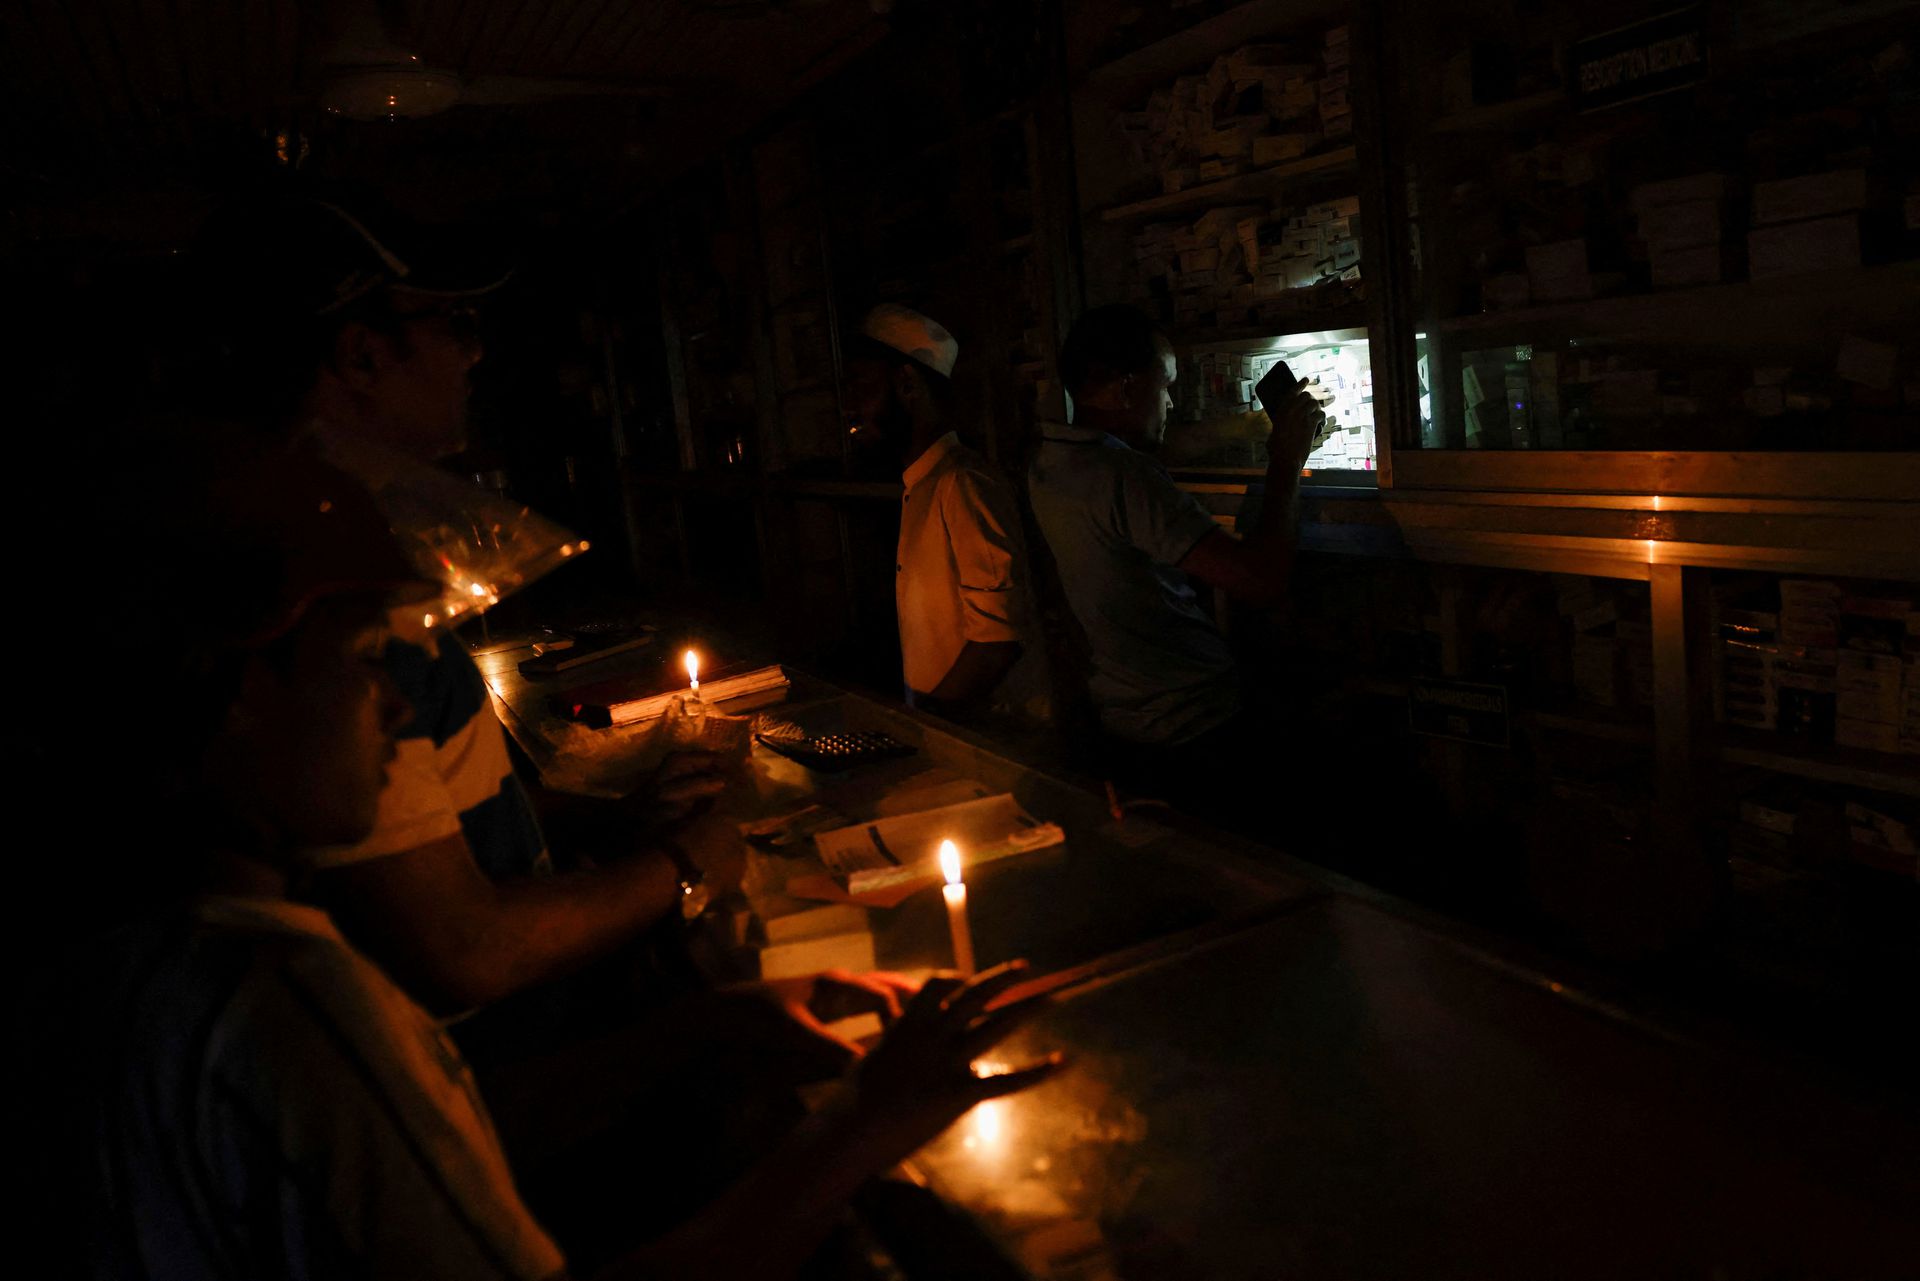 الإعصار موكا يتسبب في انقطاع الكهرباء في بنغلاديش